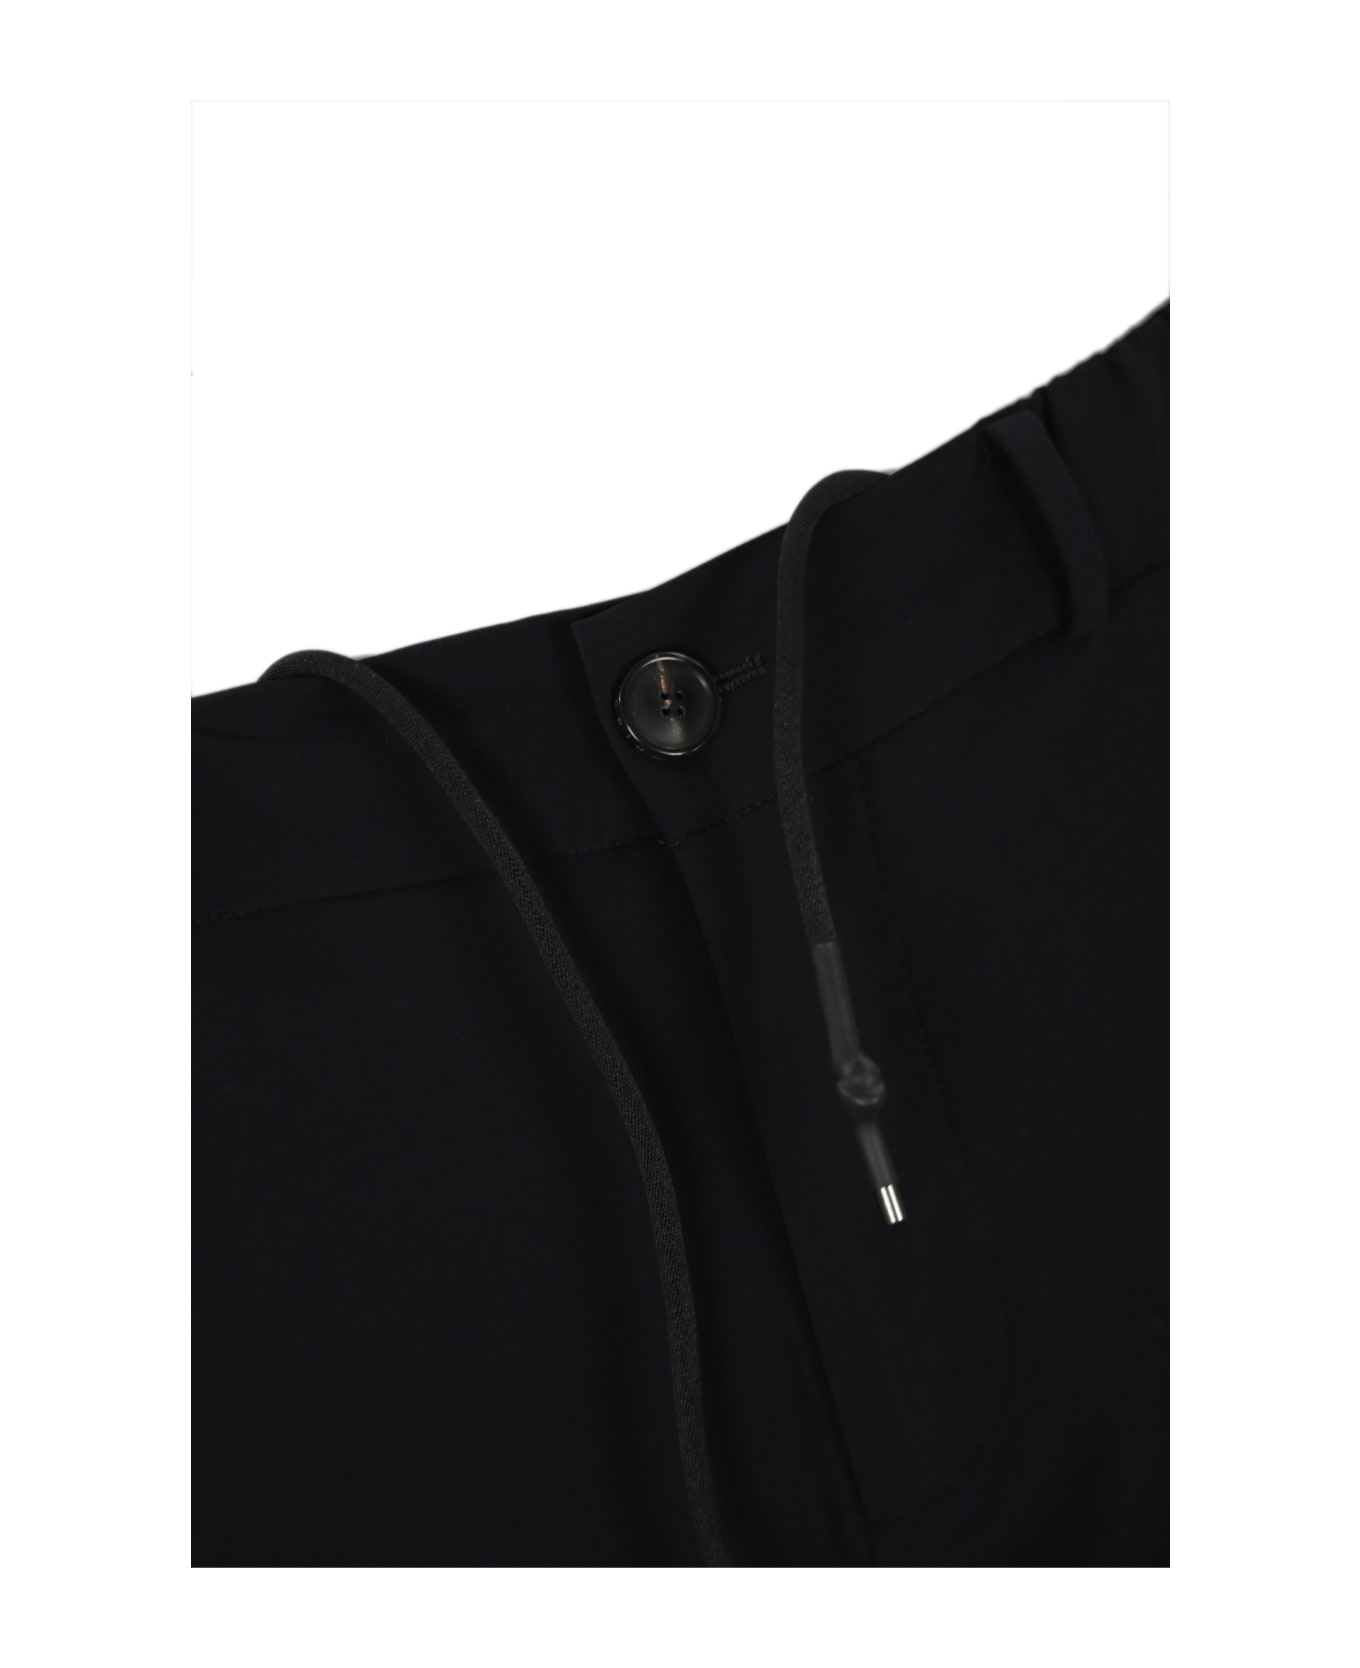 RRD - Roberto Ricci Design Chino Jo Trousers In Technical Fabric With Drawstring RRD - Roberto Ricci Design - BLACK